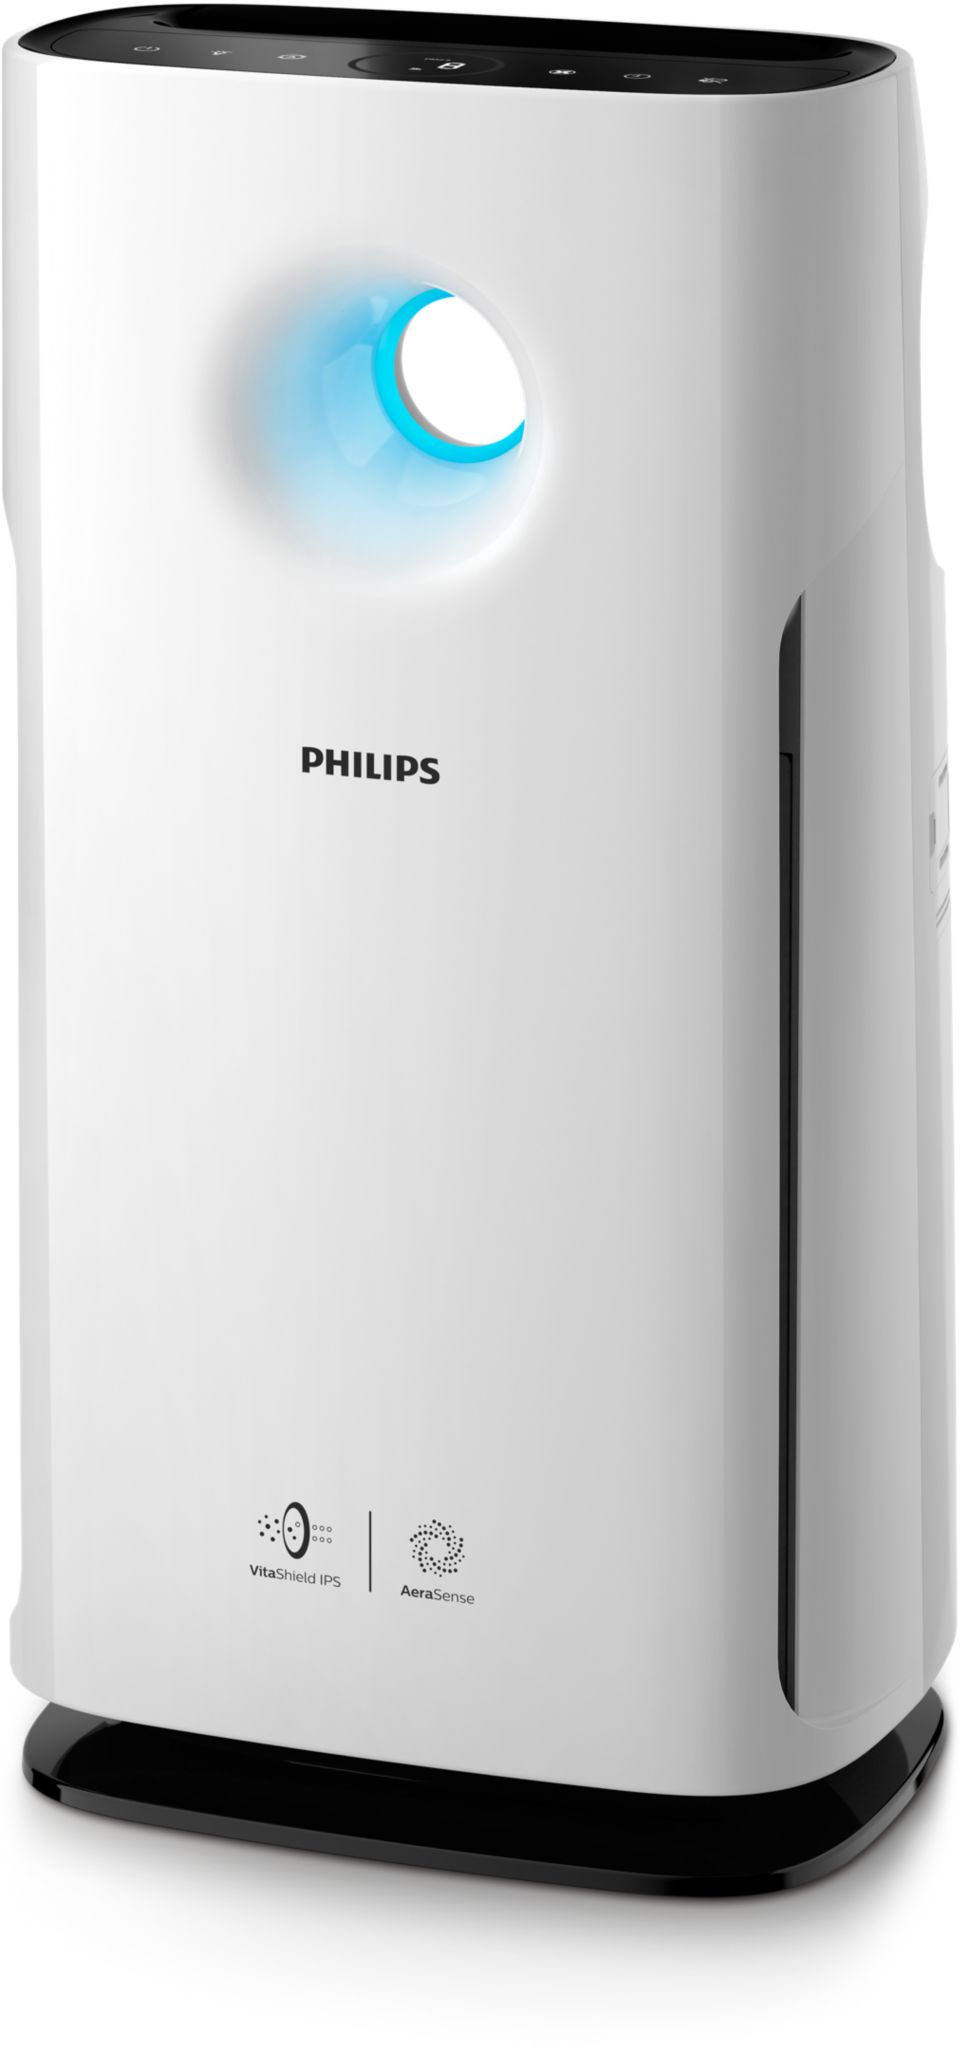 Philips y su purificador de aire infalible